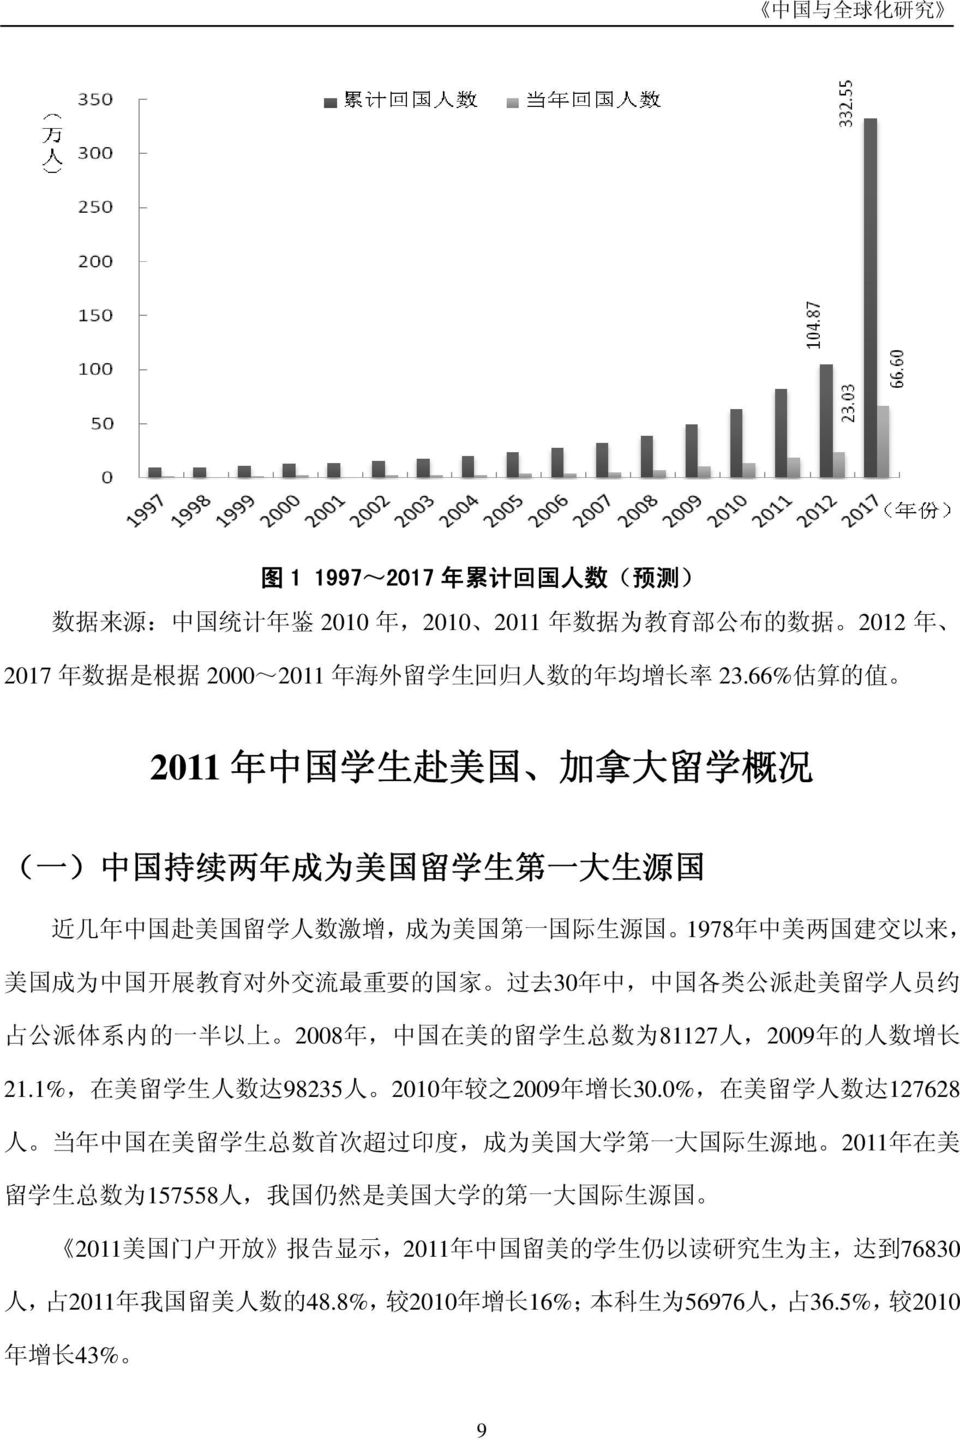 的 国 家 过 去 30 年 中, 中 国 各 类 公 派 赴 美 留 学 人 员 约 占 公 派 体 系 内 的 一 半 以 上 2008 年, 中 国 在 美 的 留 学 生 总 数 为 81127 人,2009 年 的 人 数 增 长 21.1%, 在 美 留 学 生 人 数 达 98235 人 2010 年 较 之 2009 年 增 长 30.